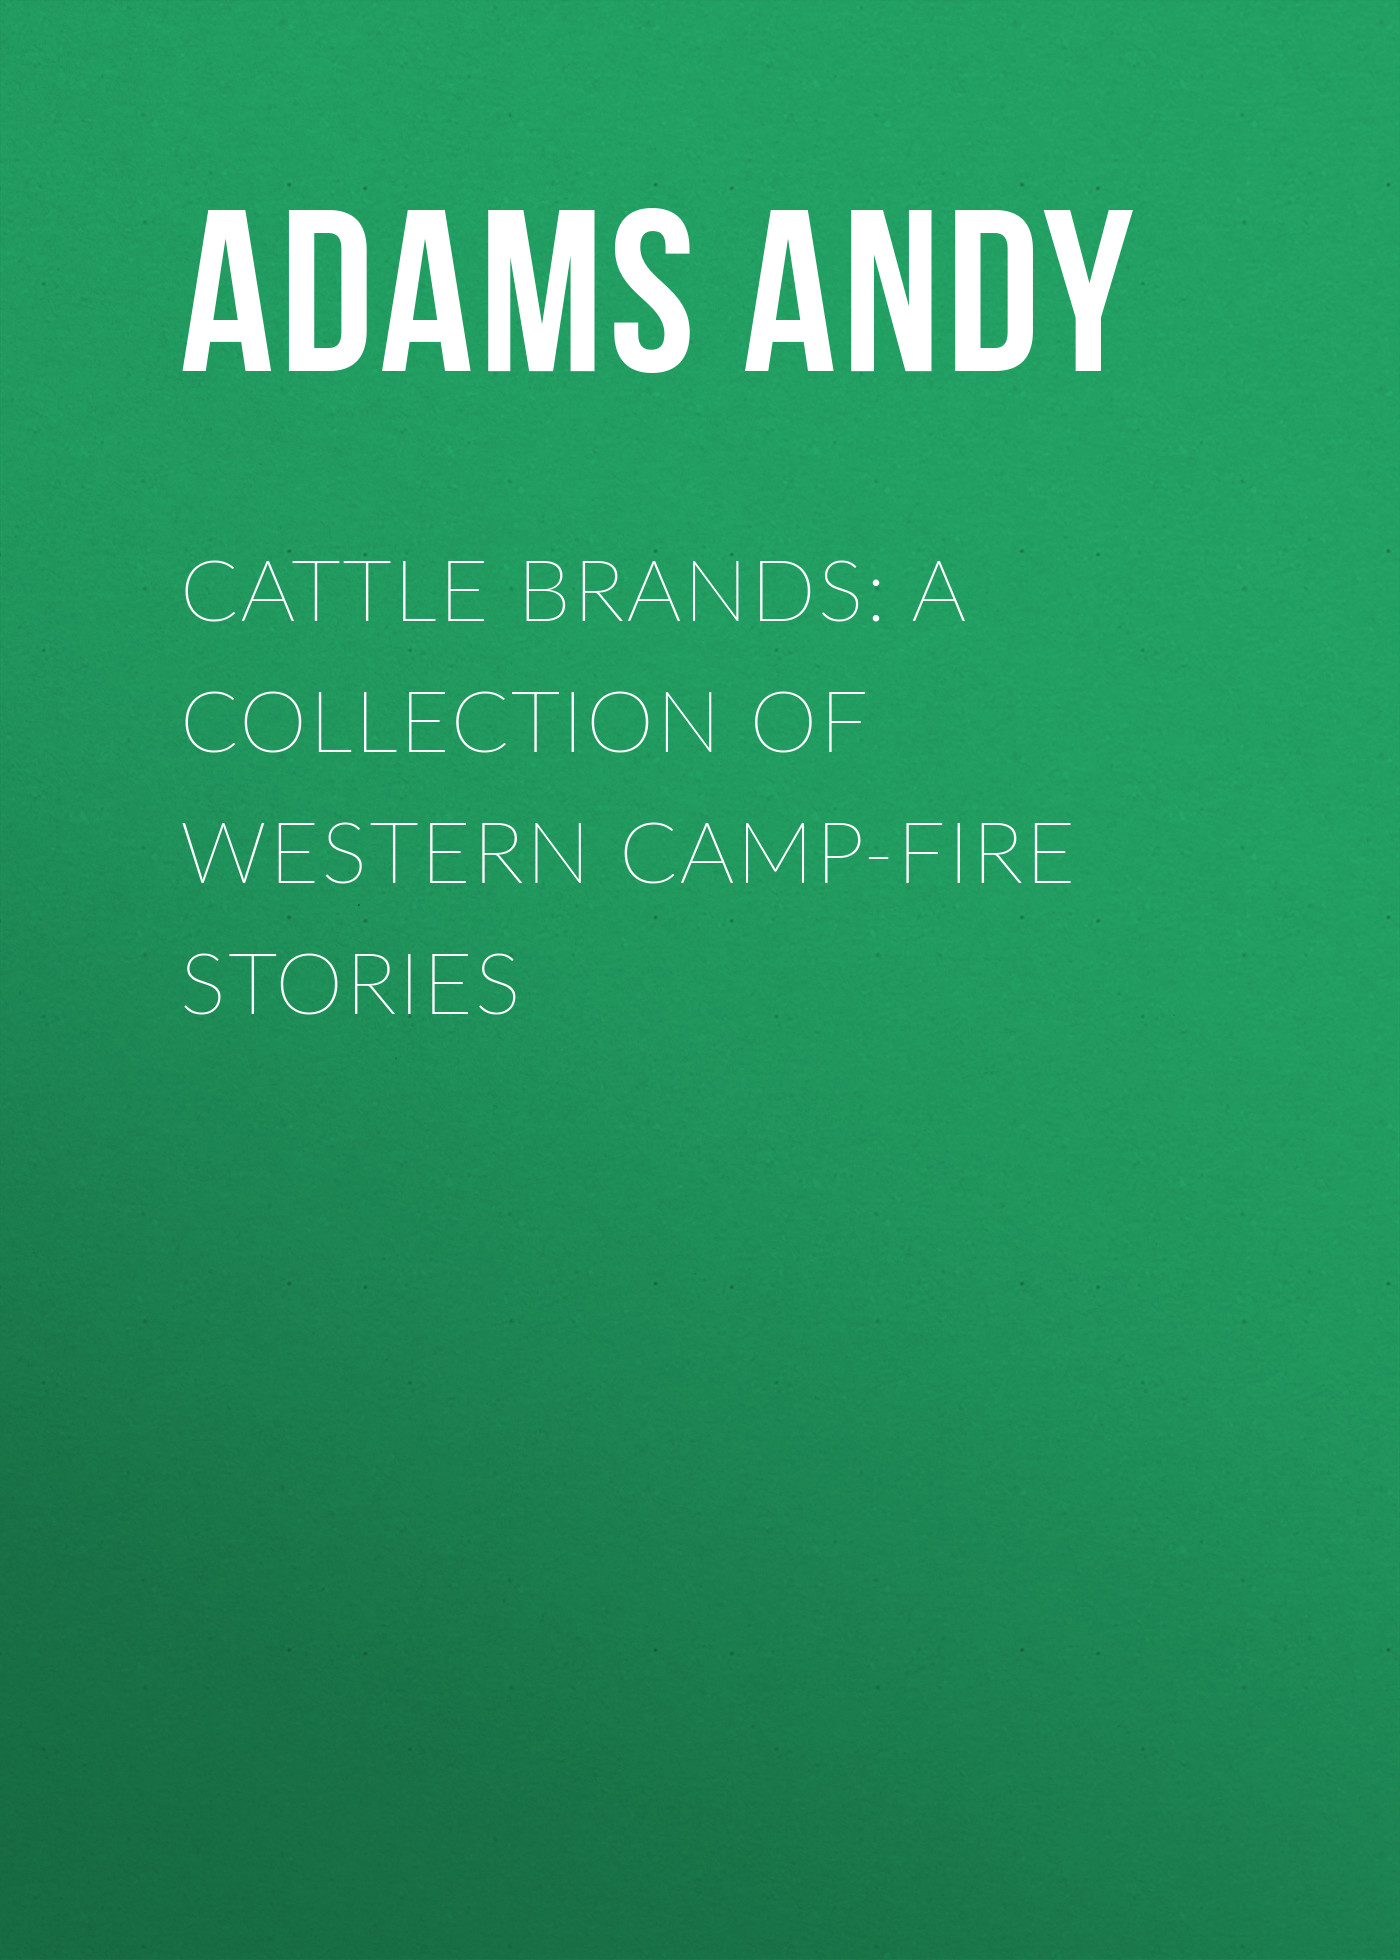 Книга Cattle Brands: A Collection of Western Camp-Fire Stories из серии , созданная Andy Adams, может относится к жанру Зарубежная классика, Зарубежная старинная литература. Стоимость электронной книги Cattle Brands: A Collection of Western Camp-Fire Stories с идентификатором 36361678 составляет 0 руб.